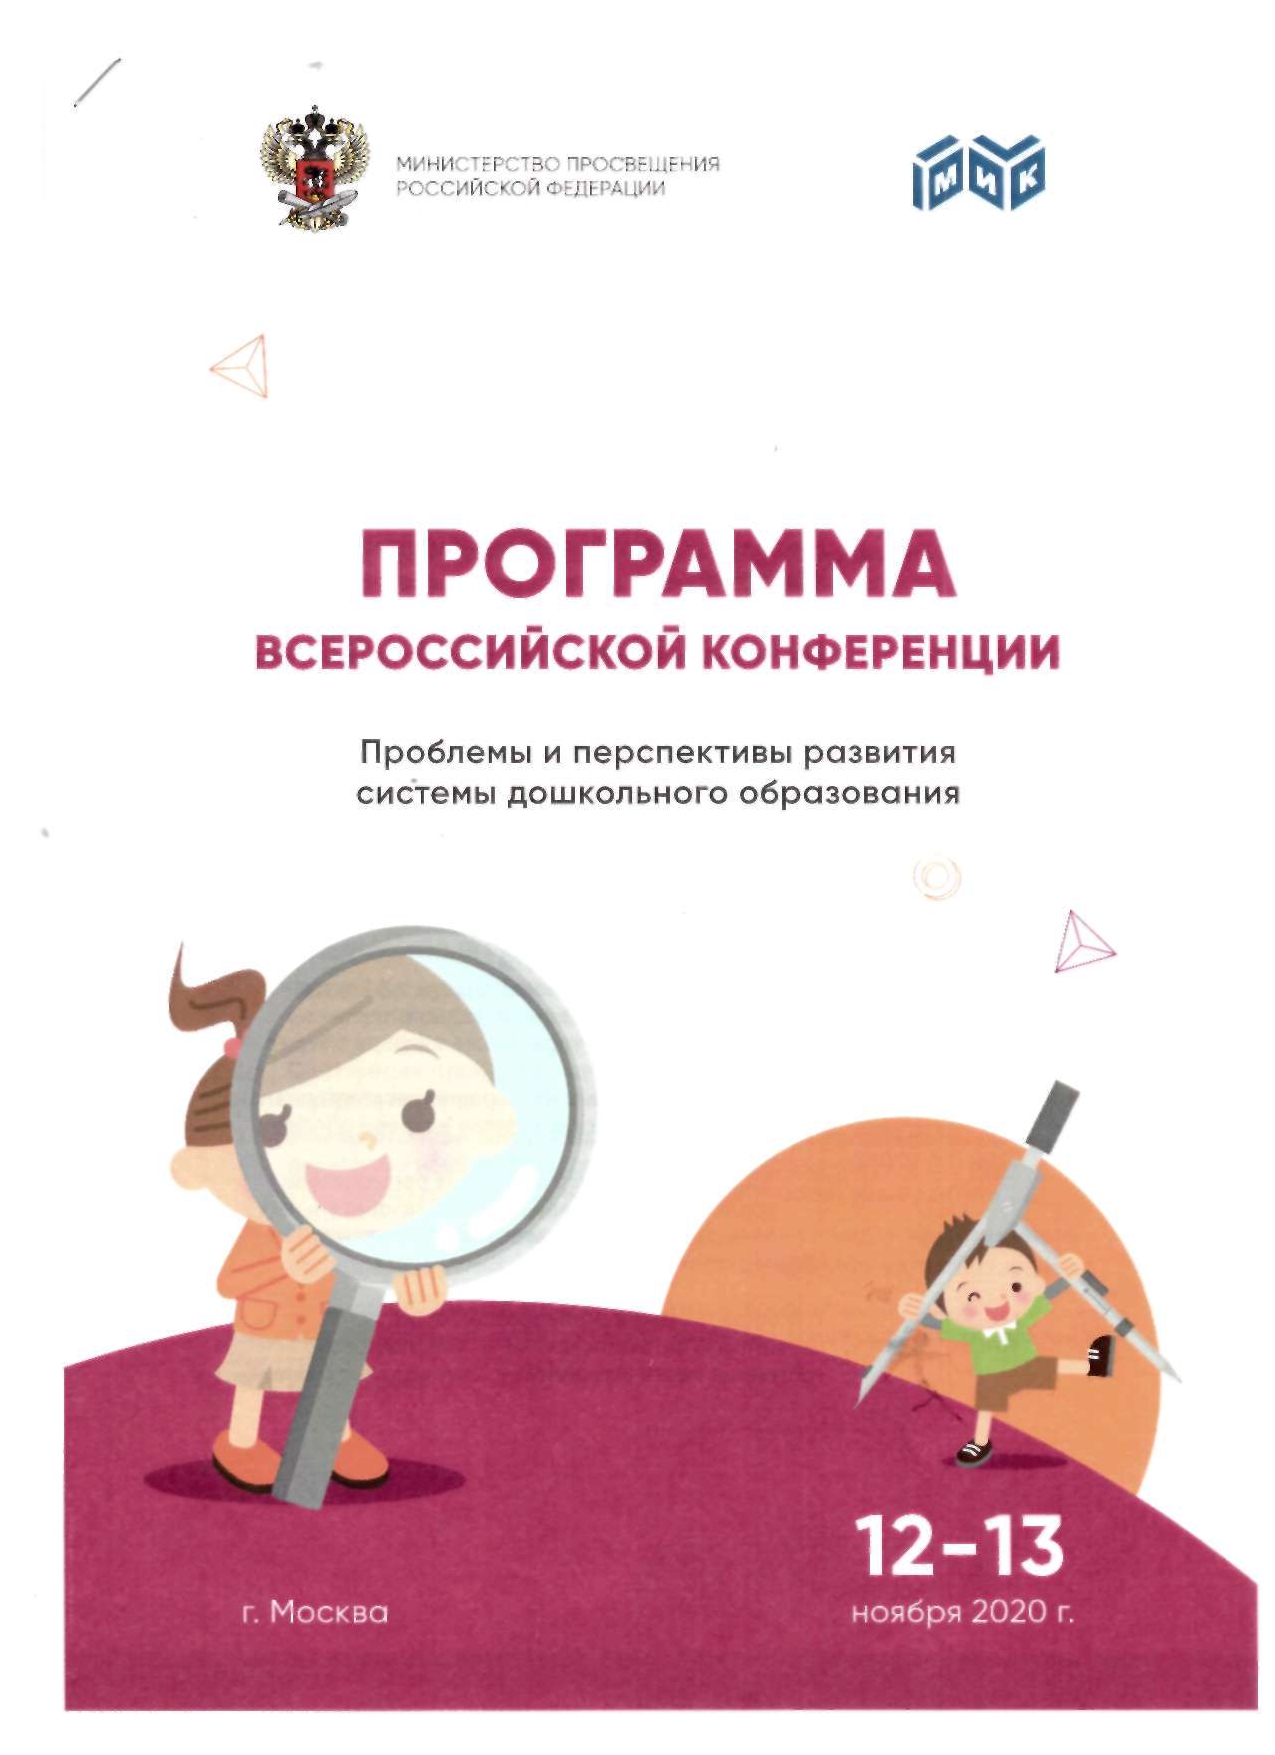 Всероссийская конференция «Проблемы и перспективы развития системы дошкольного образования»